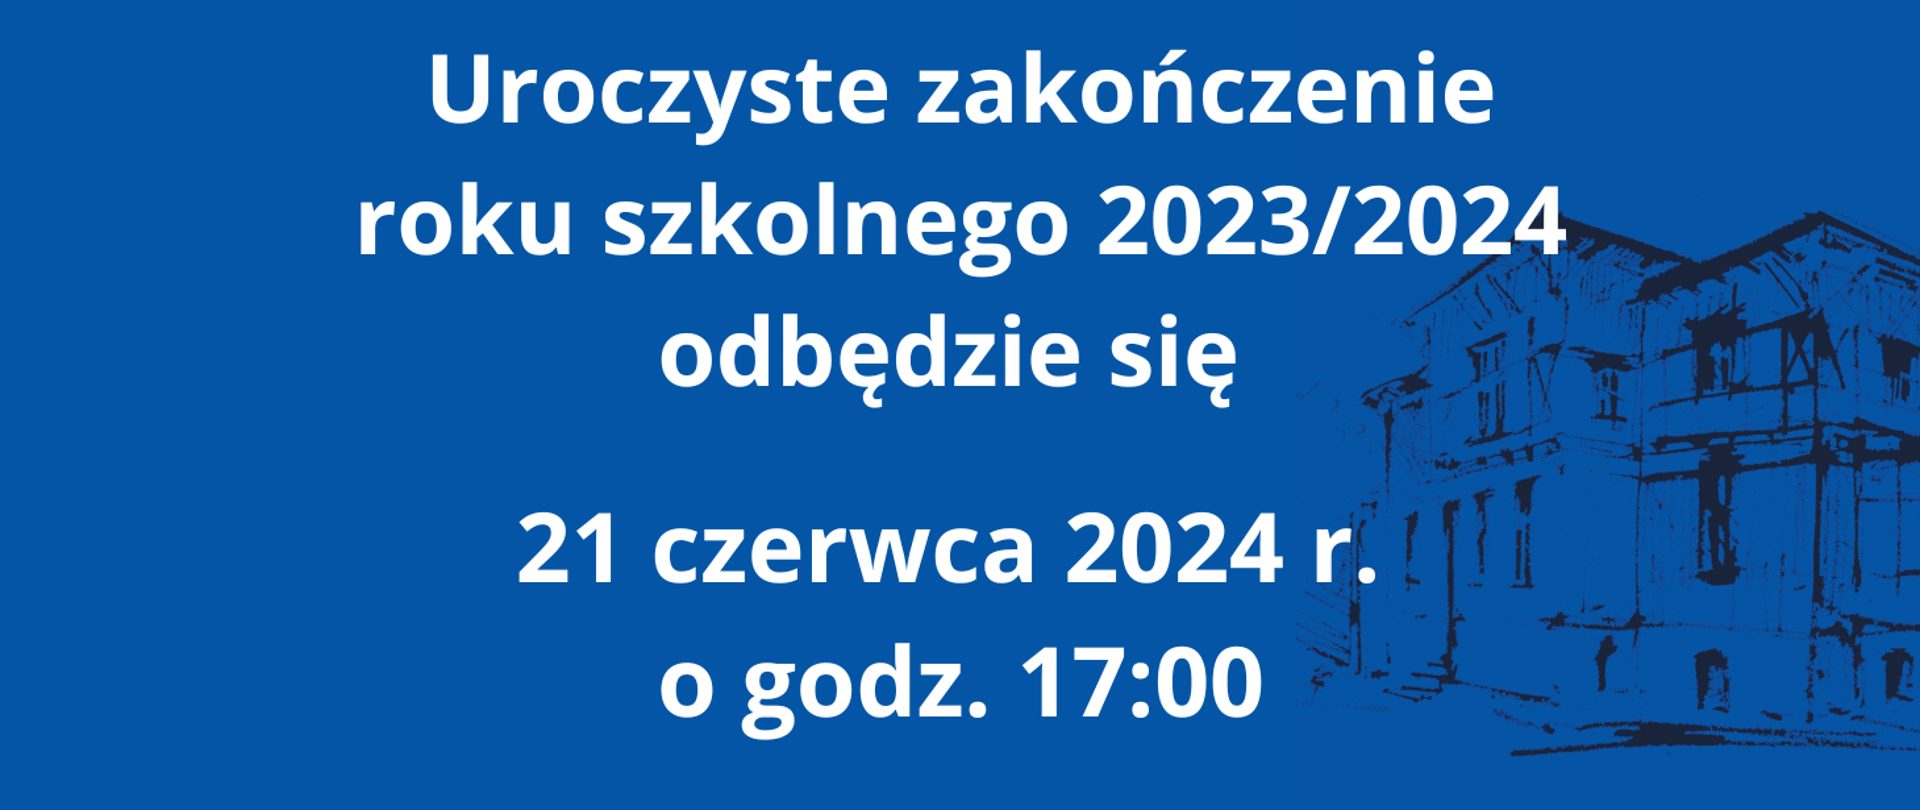 Informacja o zakończeniu roku szkolnego 2023/2024 21 czerwca 2024 r. o godzinie 17:00